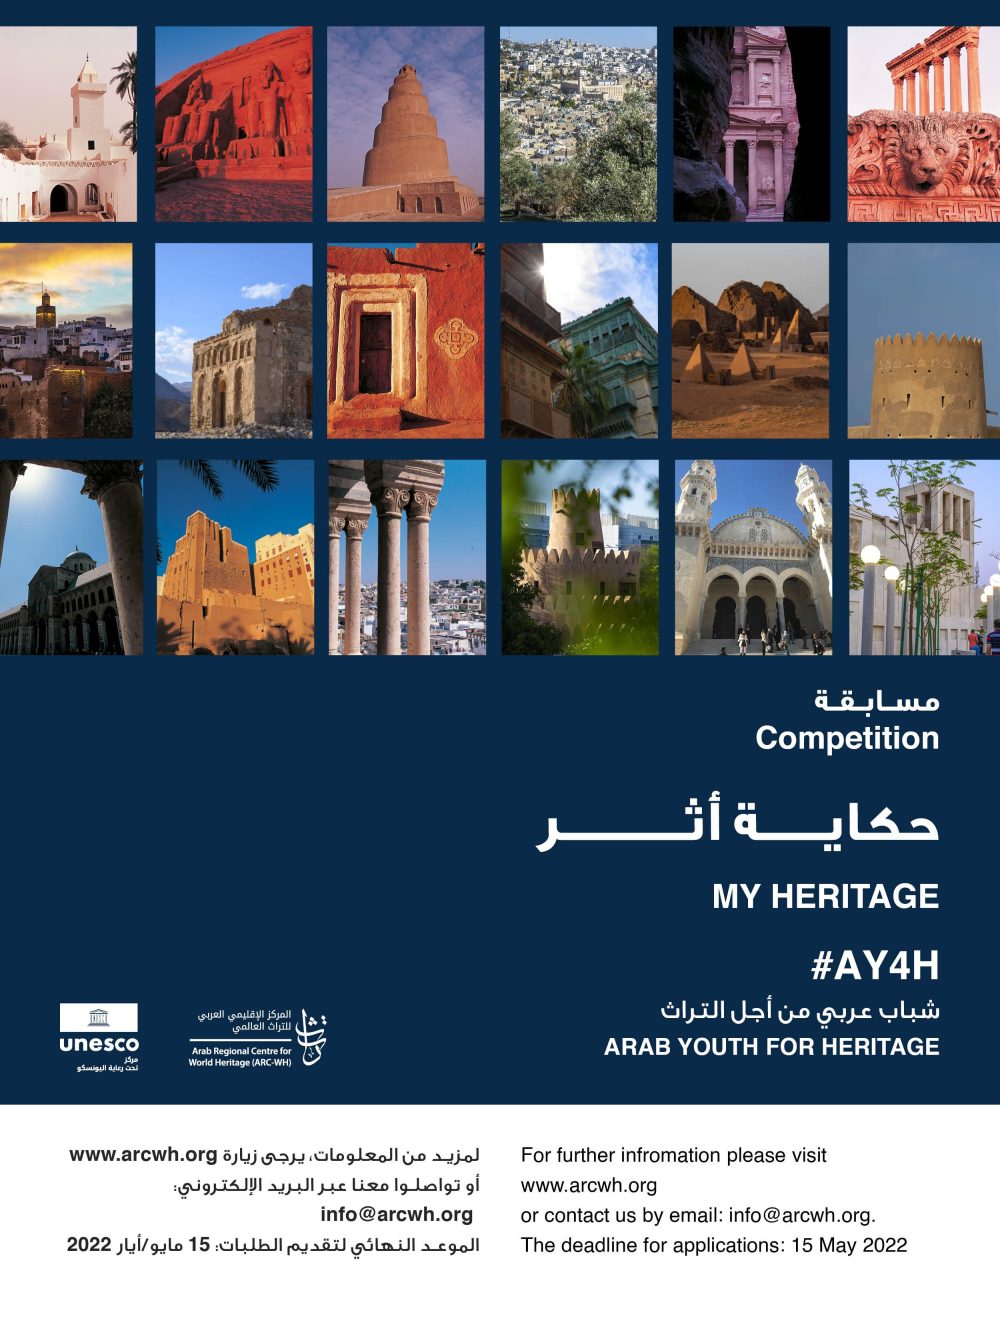 دعوة لتقديم الطلب حكاية أثر -شباب عربي من أجل التراث #AY4H